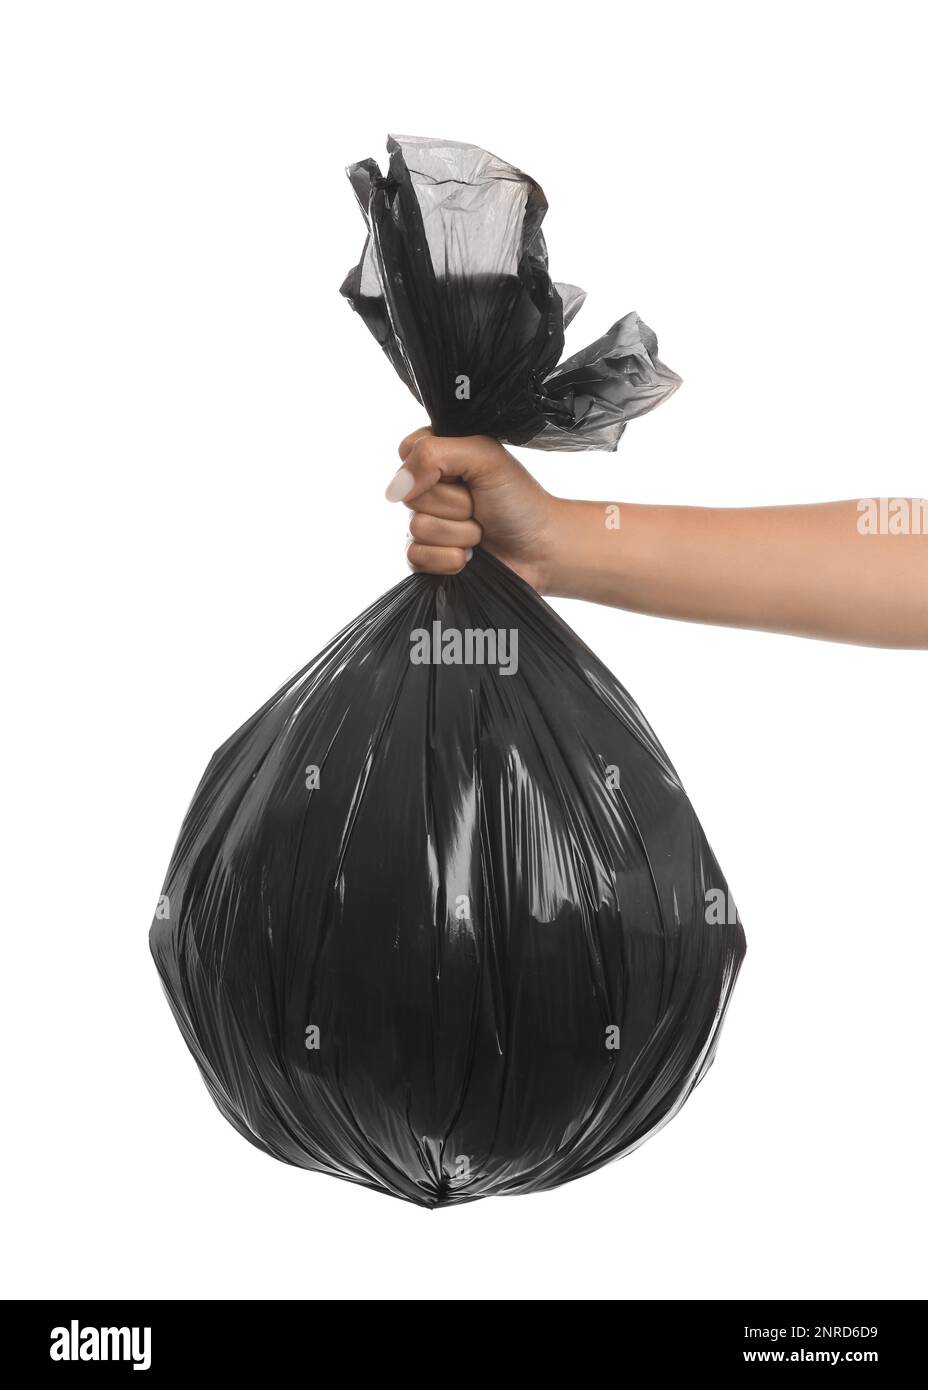 https://c8.alamy.com/comp/2NRD6D9/woman-holding-full-garbage-bag-on-white-background-2NRD6D9.jpg